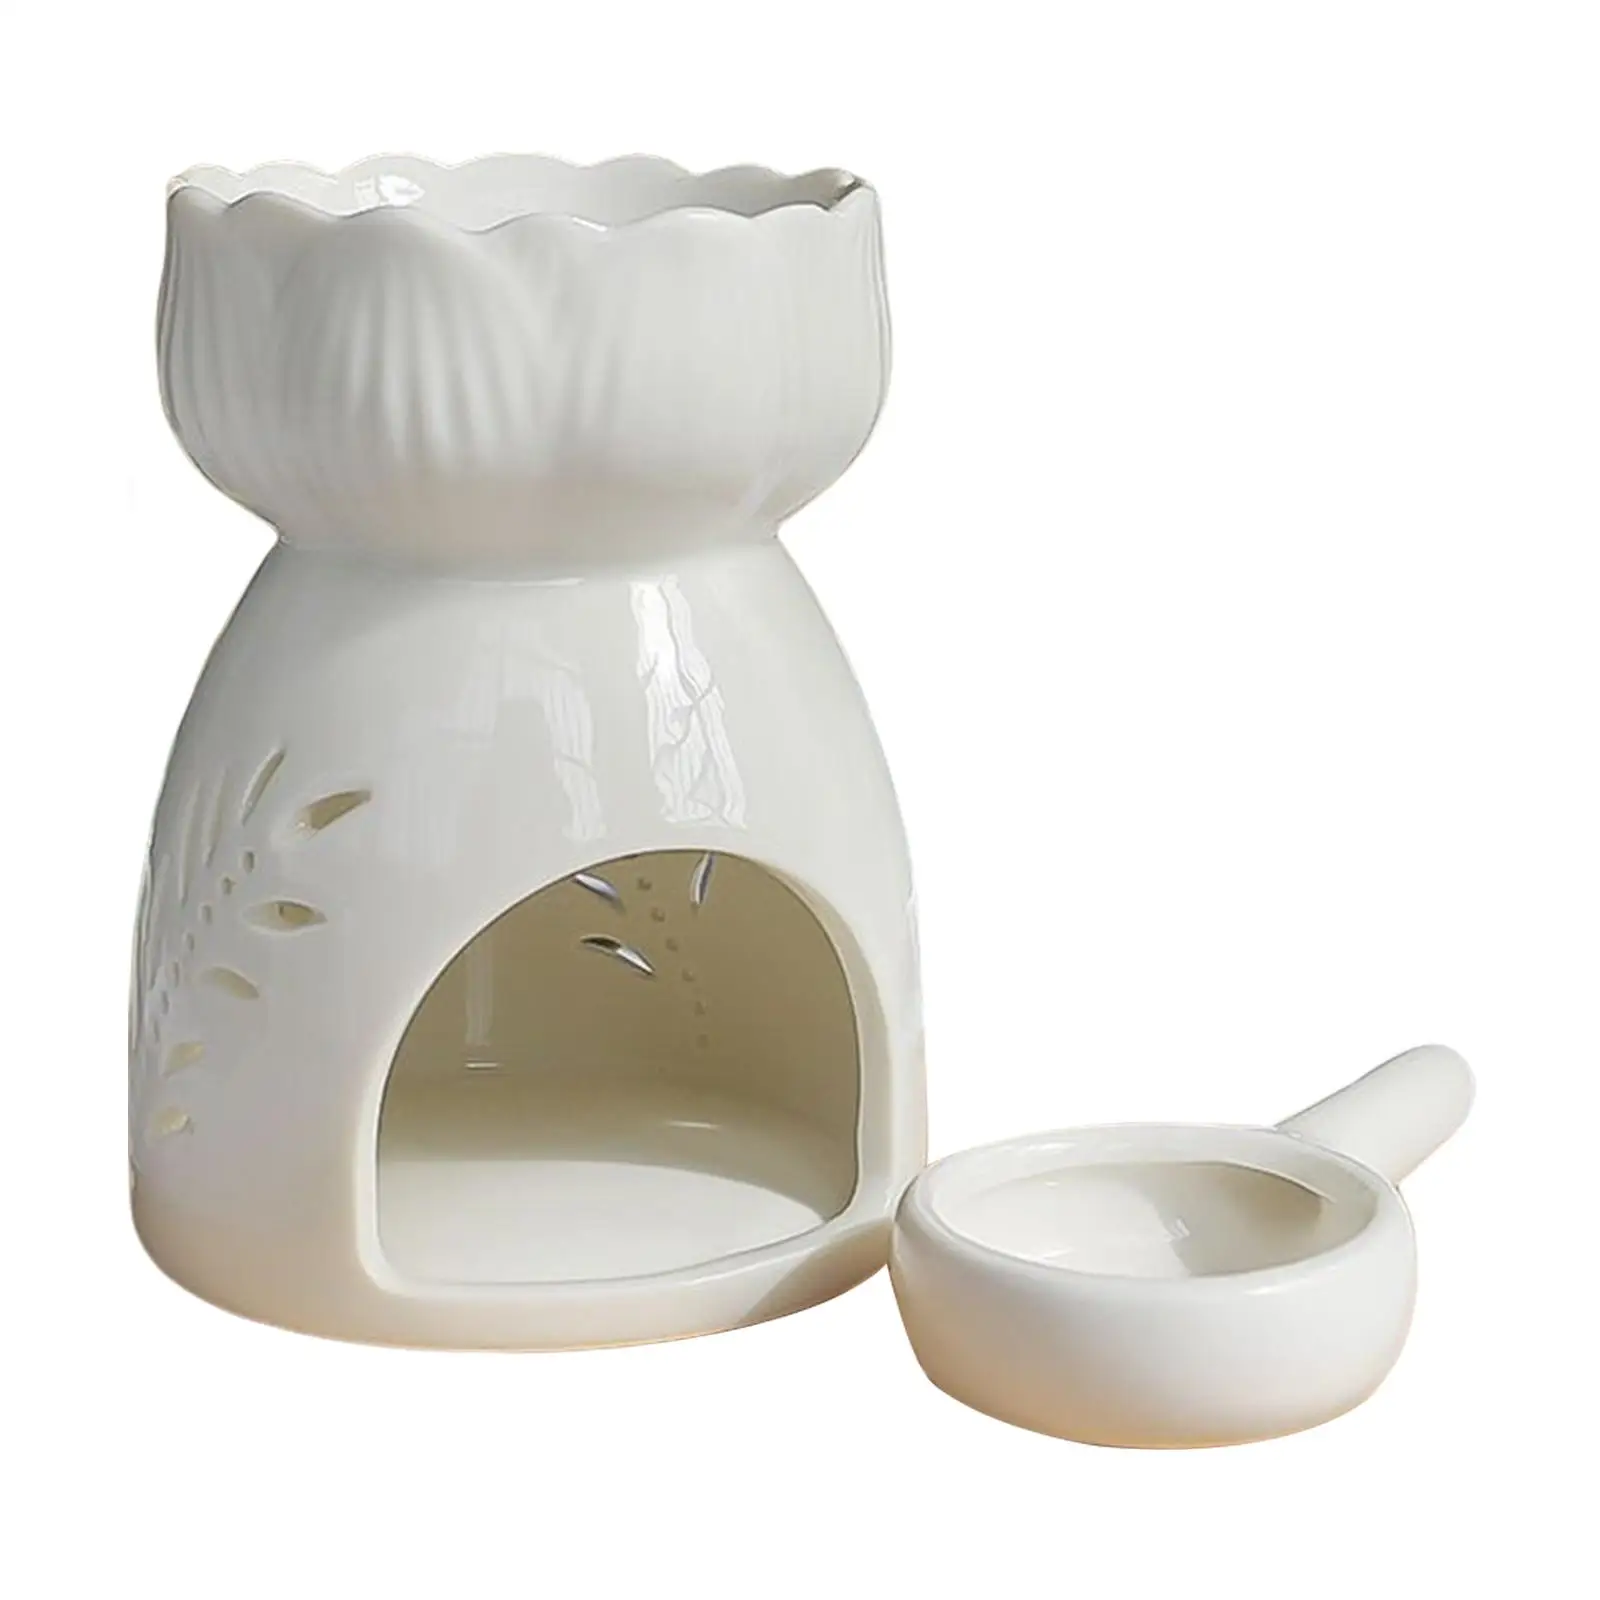 Romantic Ceramic Tealight Holder Elegant Burner Tealight Candle Holder for Travel Housewarming Gift Tea House Christmas